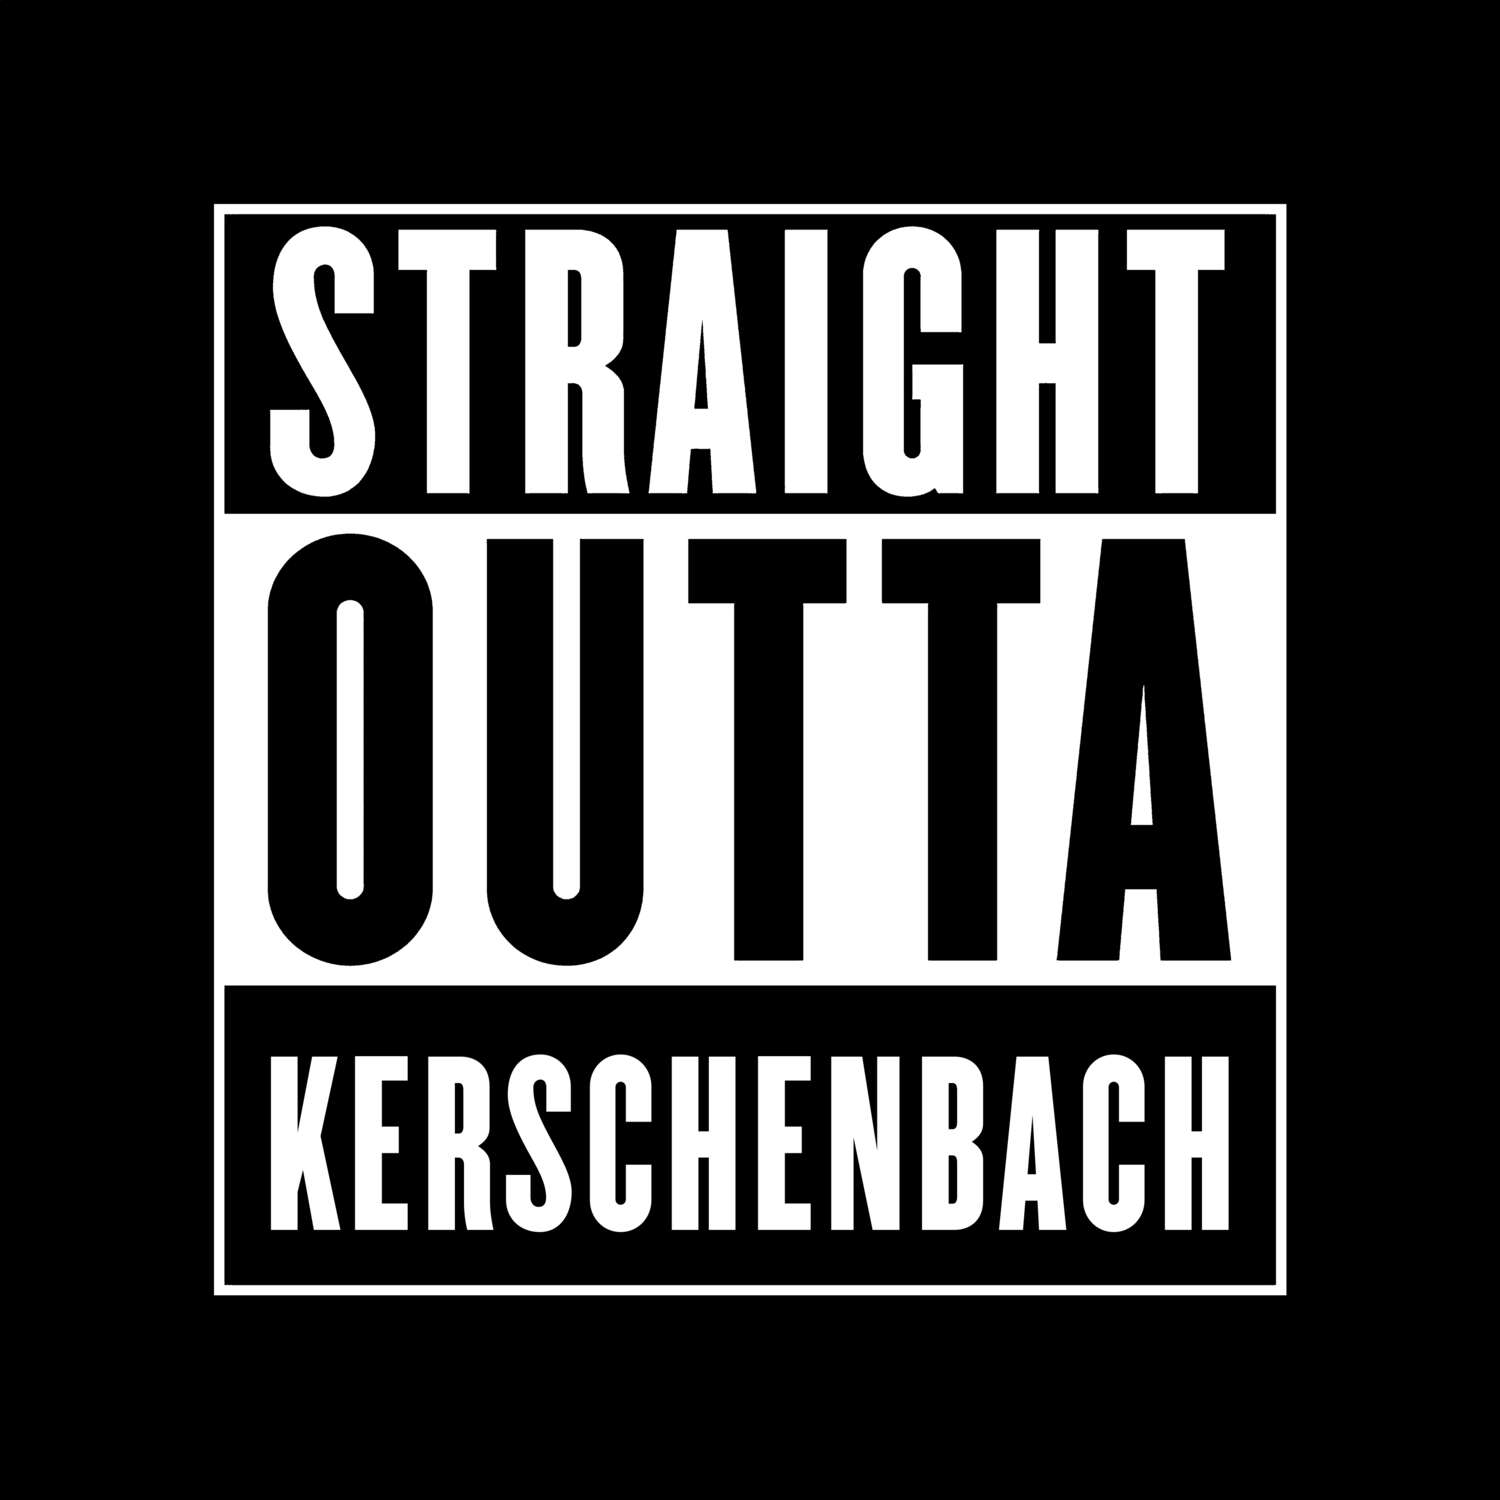 Kerschenbach T-Shirt »Straight Outta«